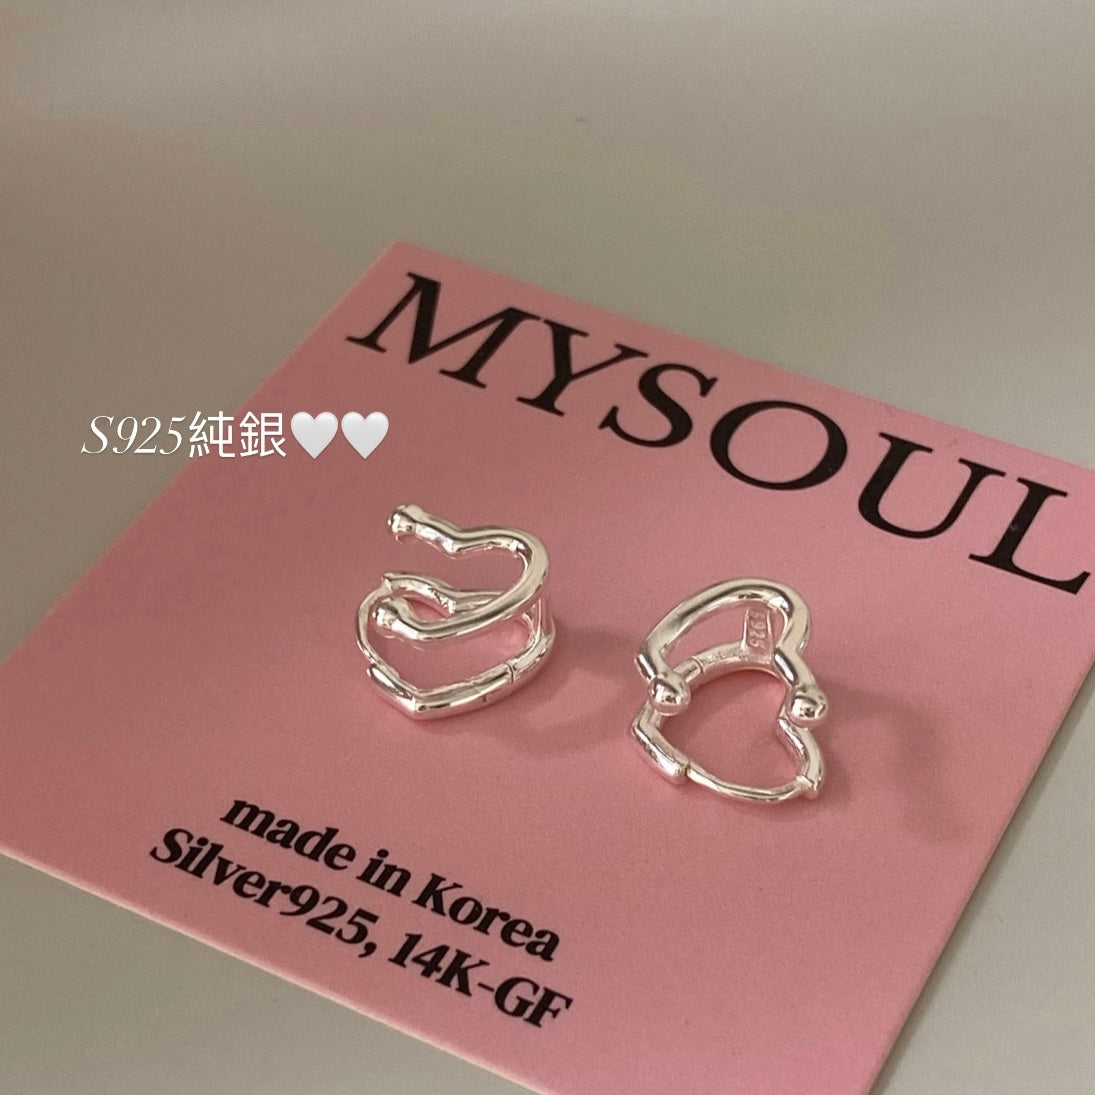 [925silver] Double Heart One Touch Earrings